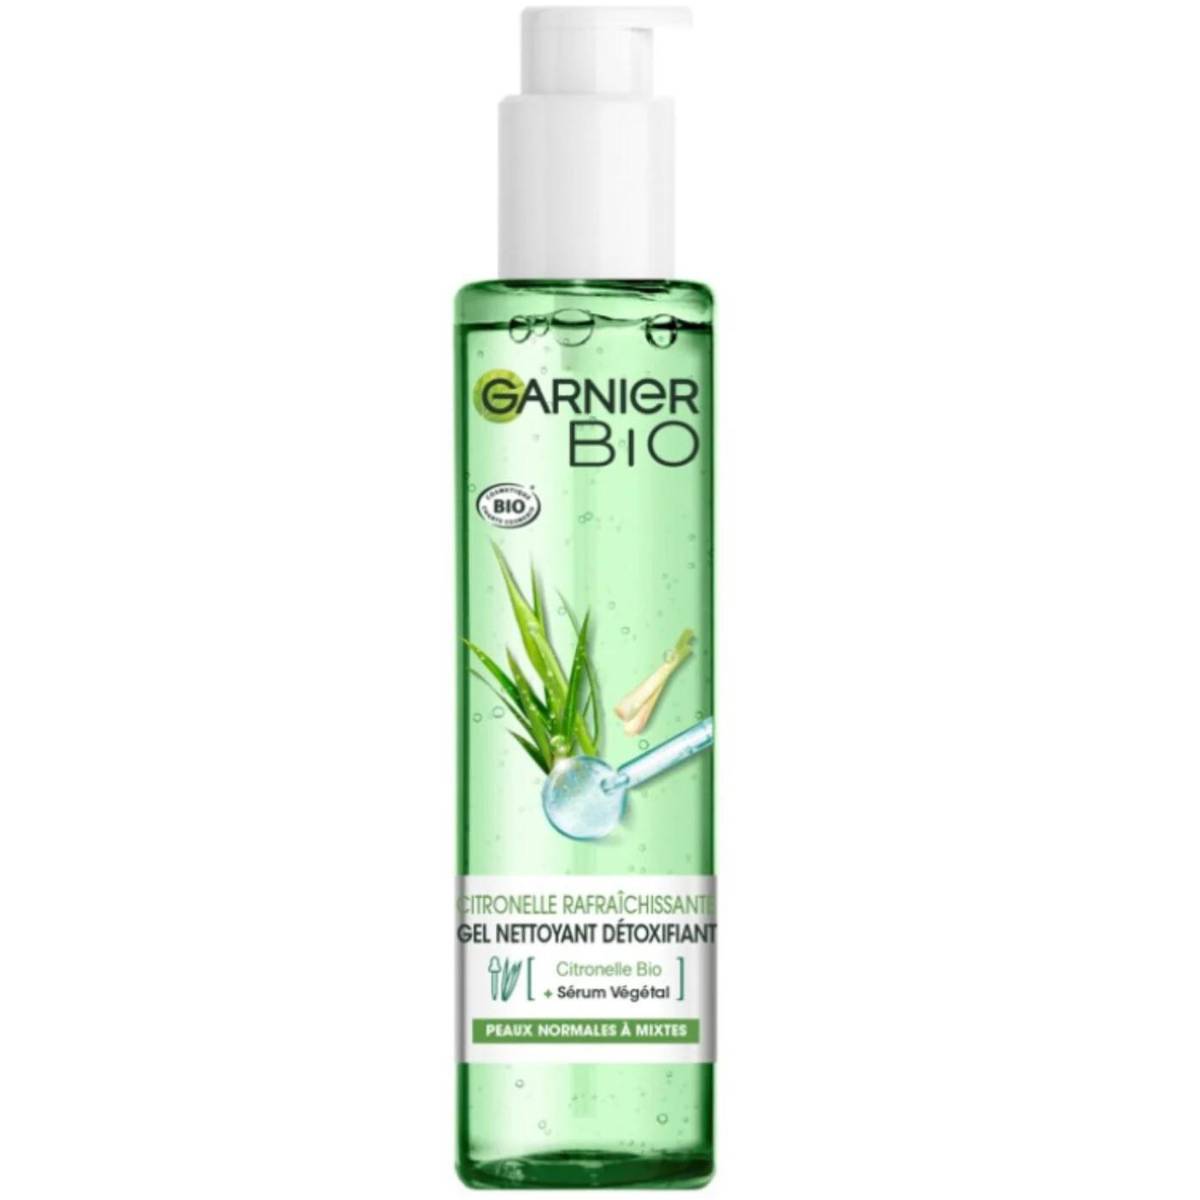 150ml Face - MaxxiDiscount Bio Garnier Lemongrass Cleanser Detoxifying